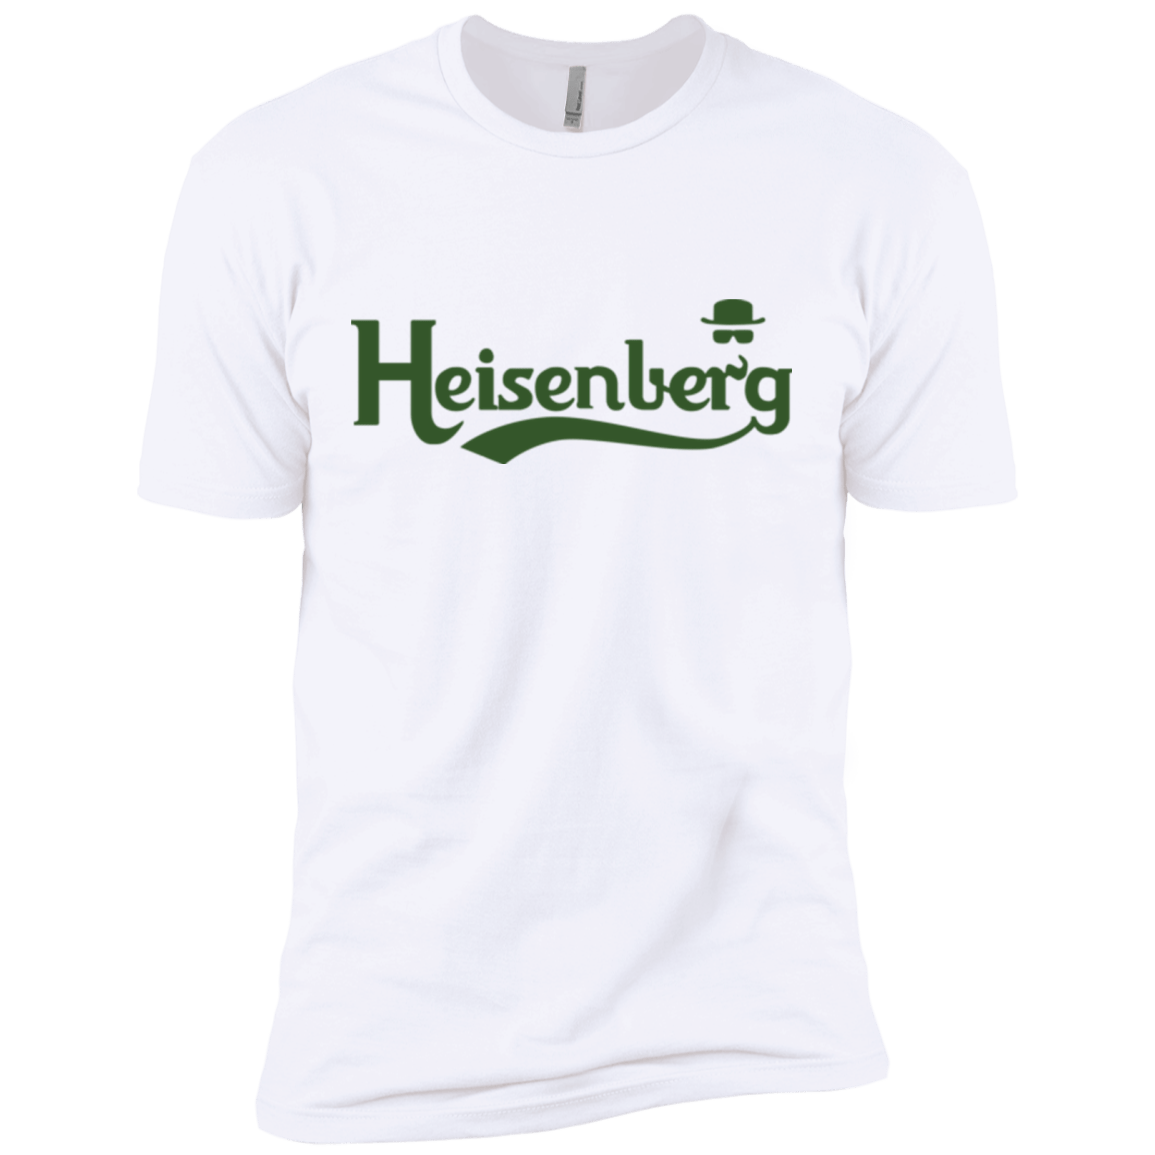 T-Shirts White / X-Small Heisenberg 2 Men's Premium T-Shirt